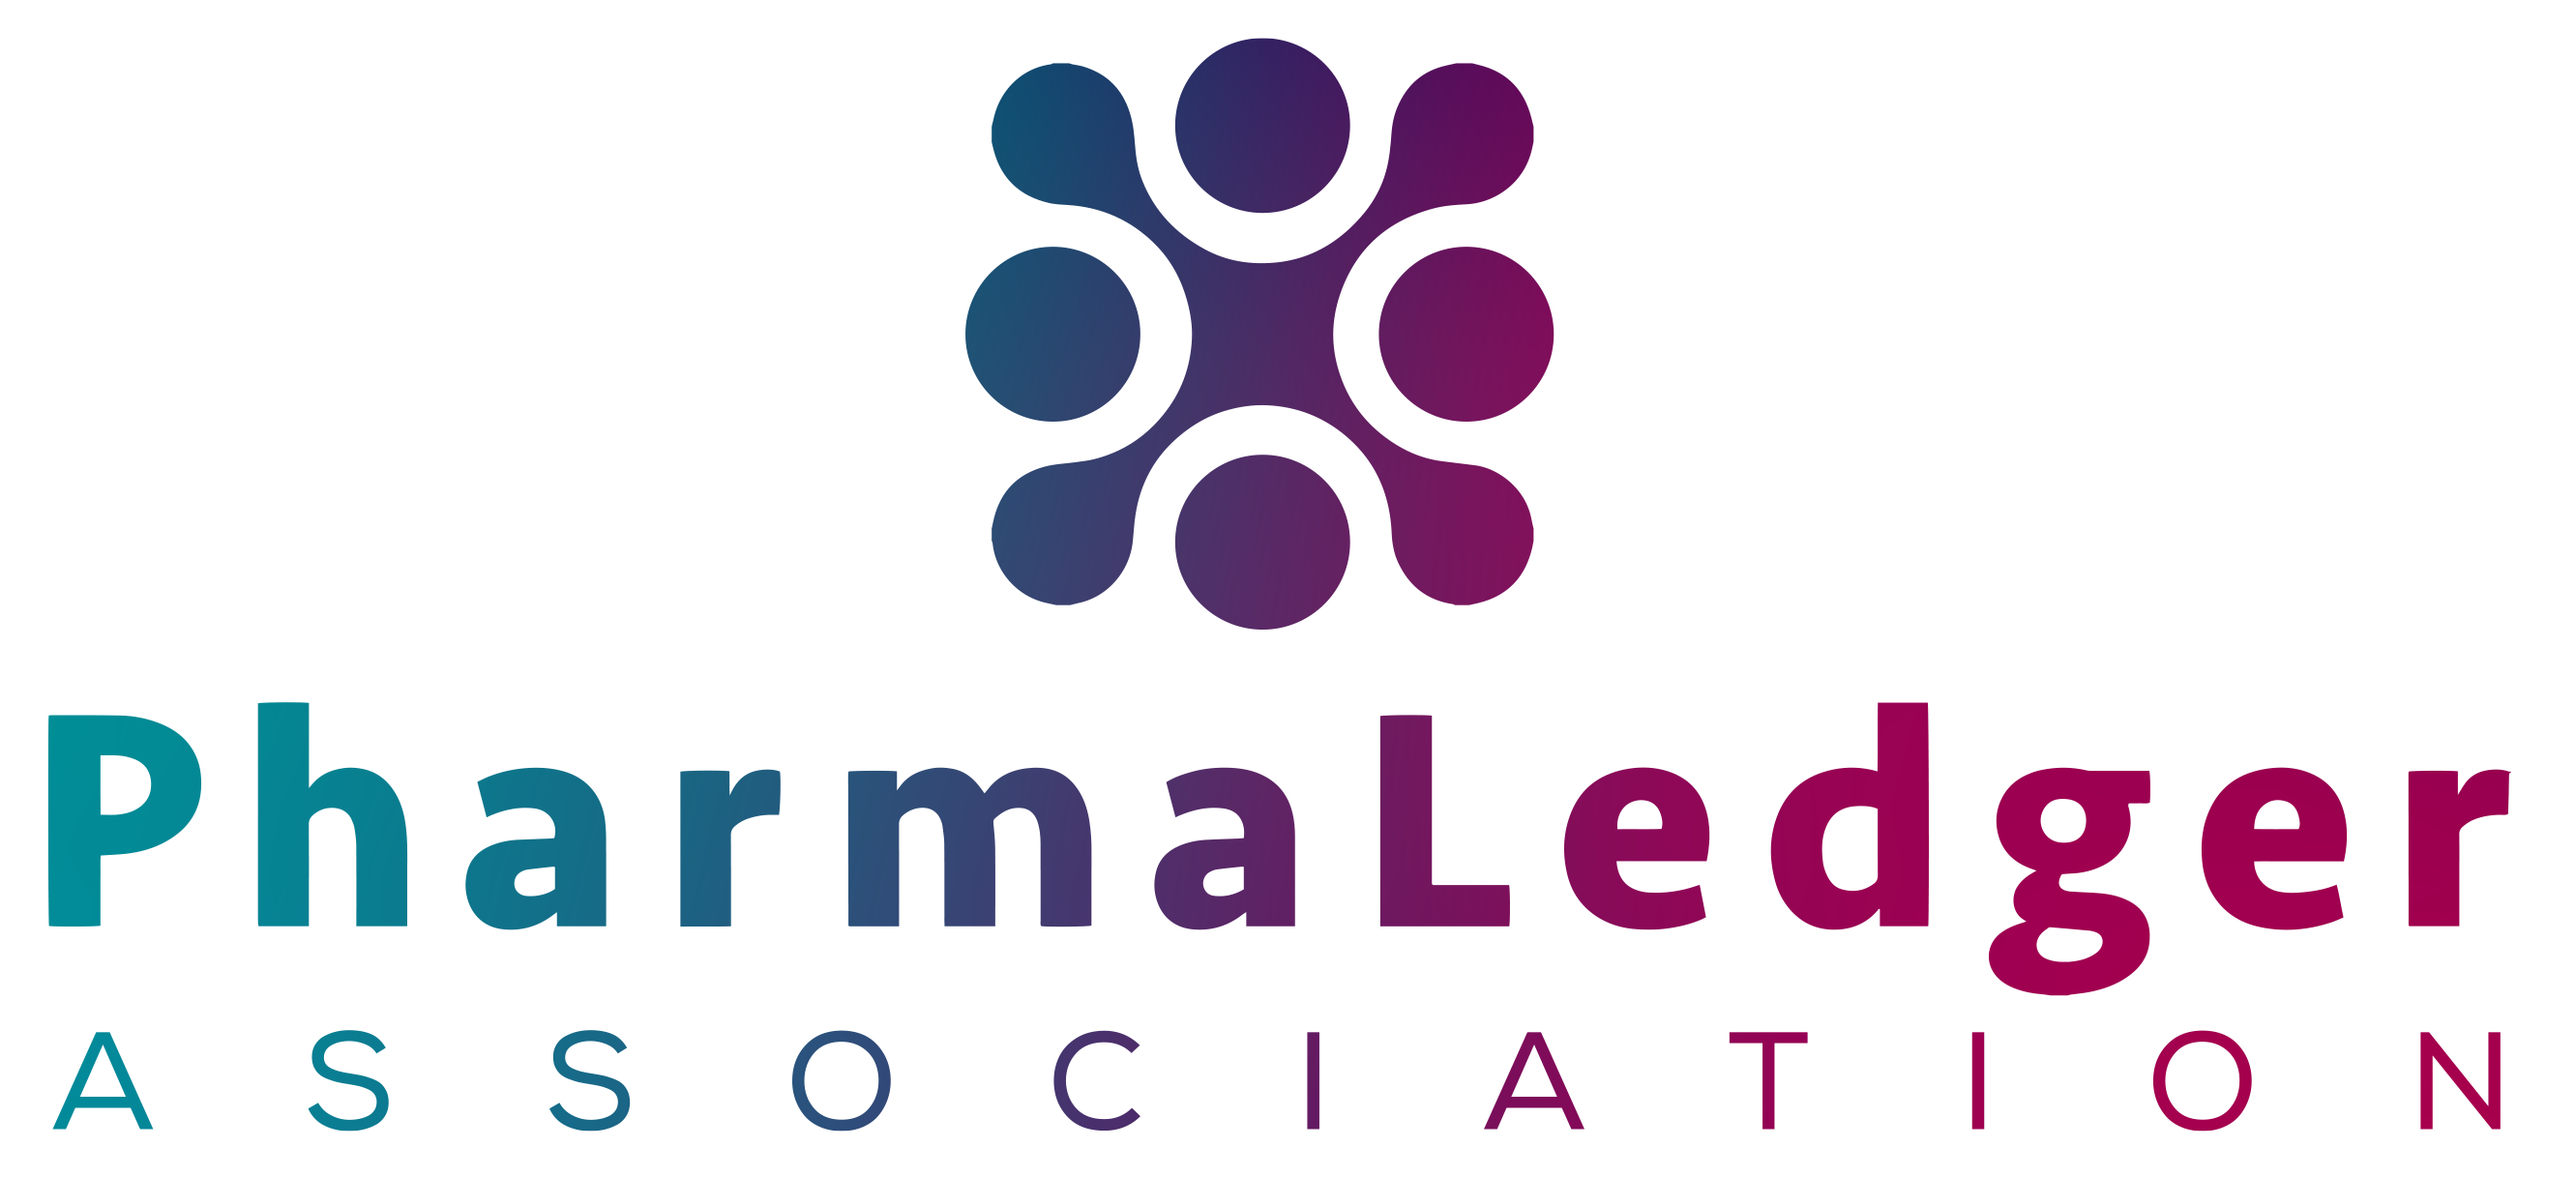 PharmaLedger Association logo